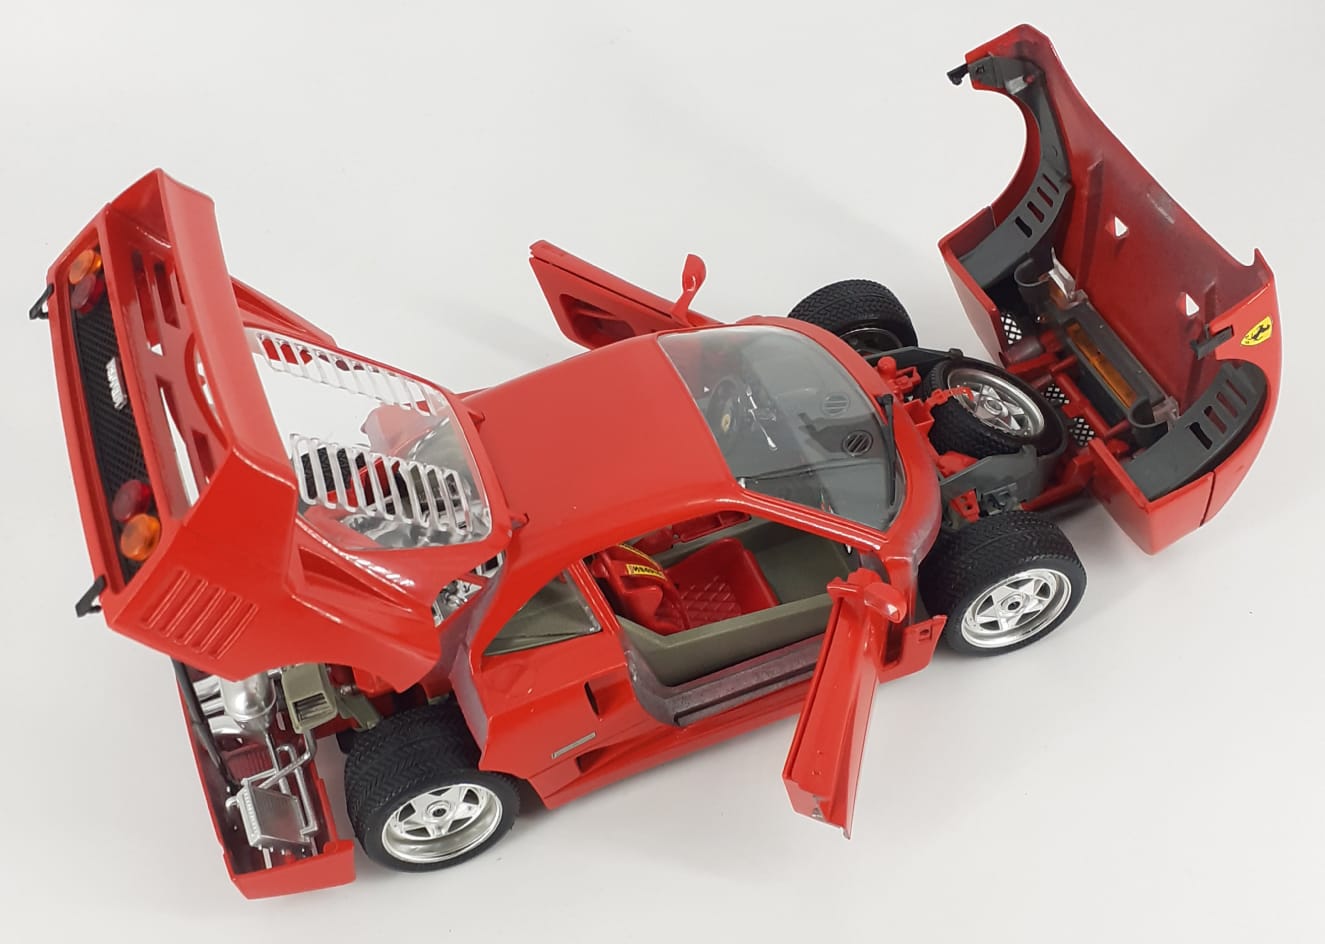 Ferrari F40 (1987) scala 1/18 Bburago